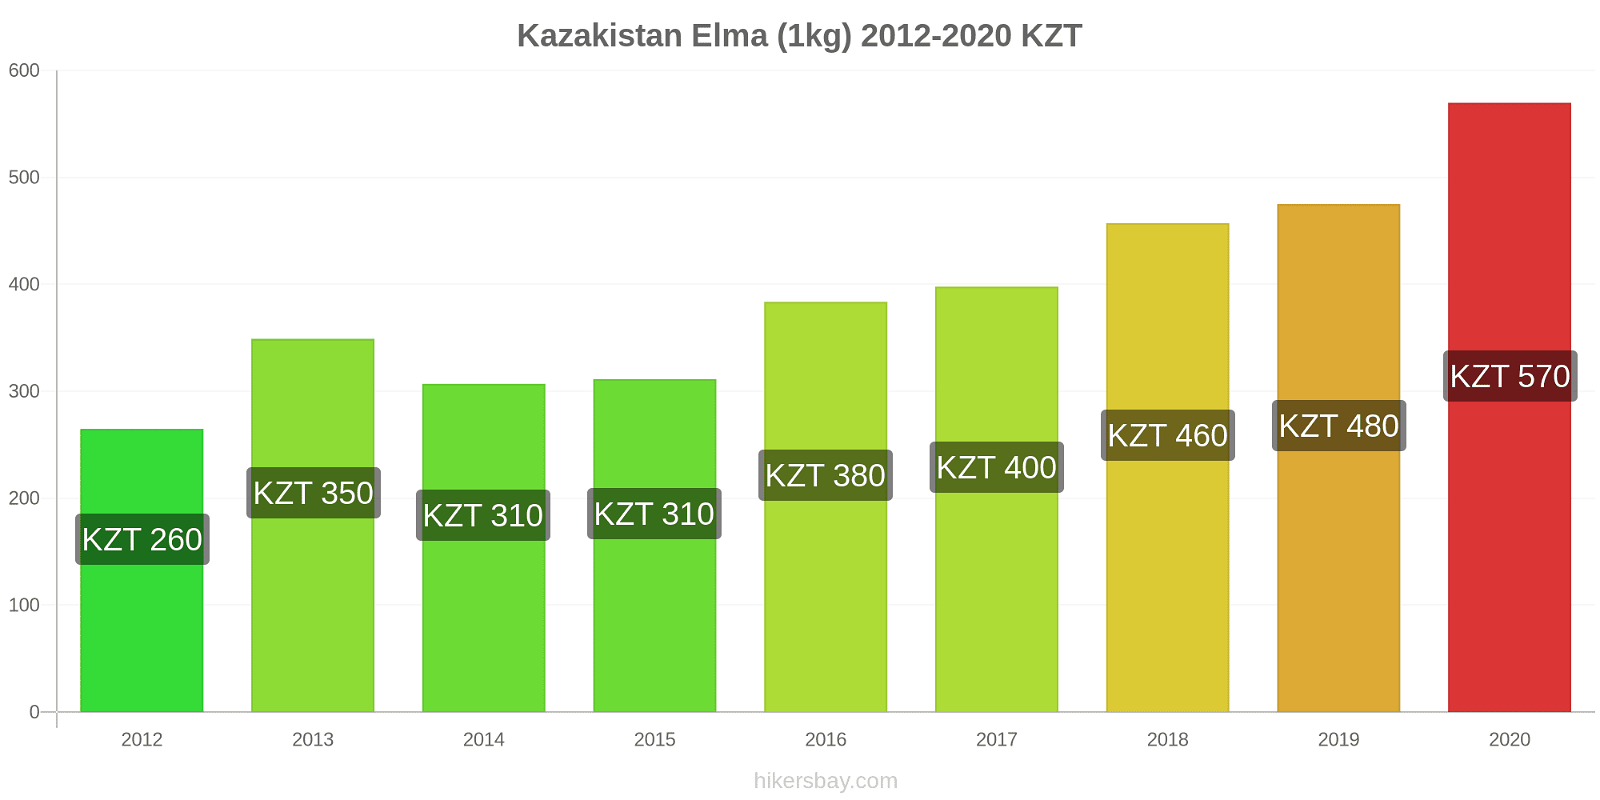 Kazakistan fiyat değişiklikleri Elma (1kg) hikersbay.com